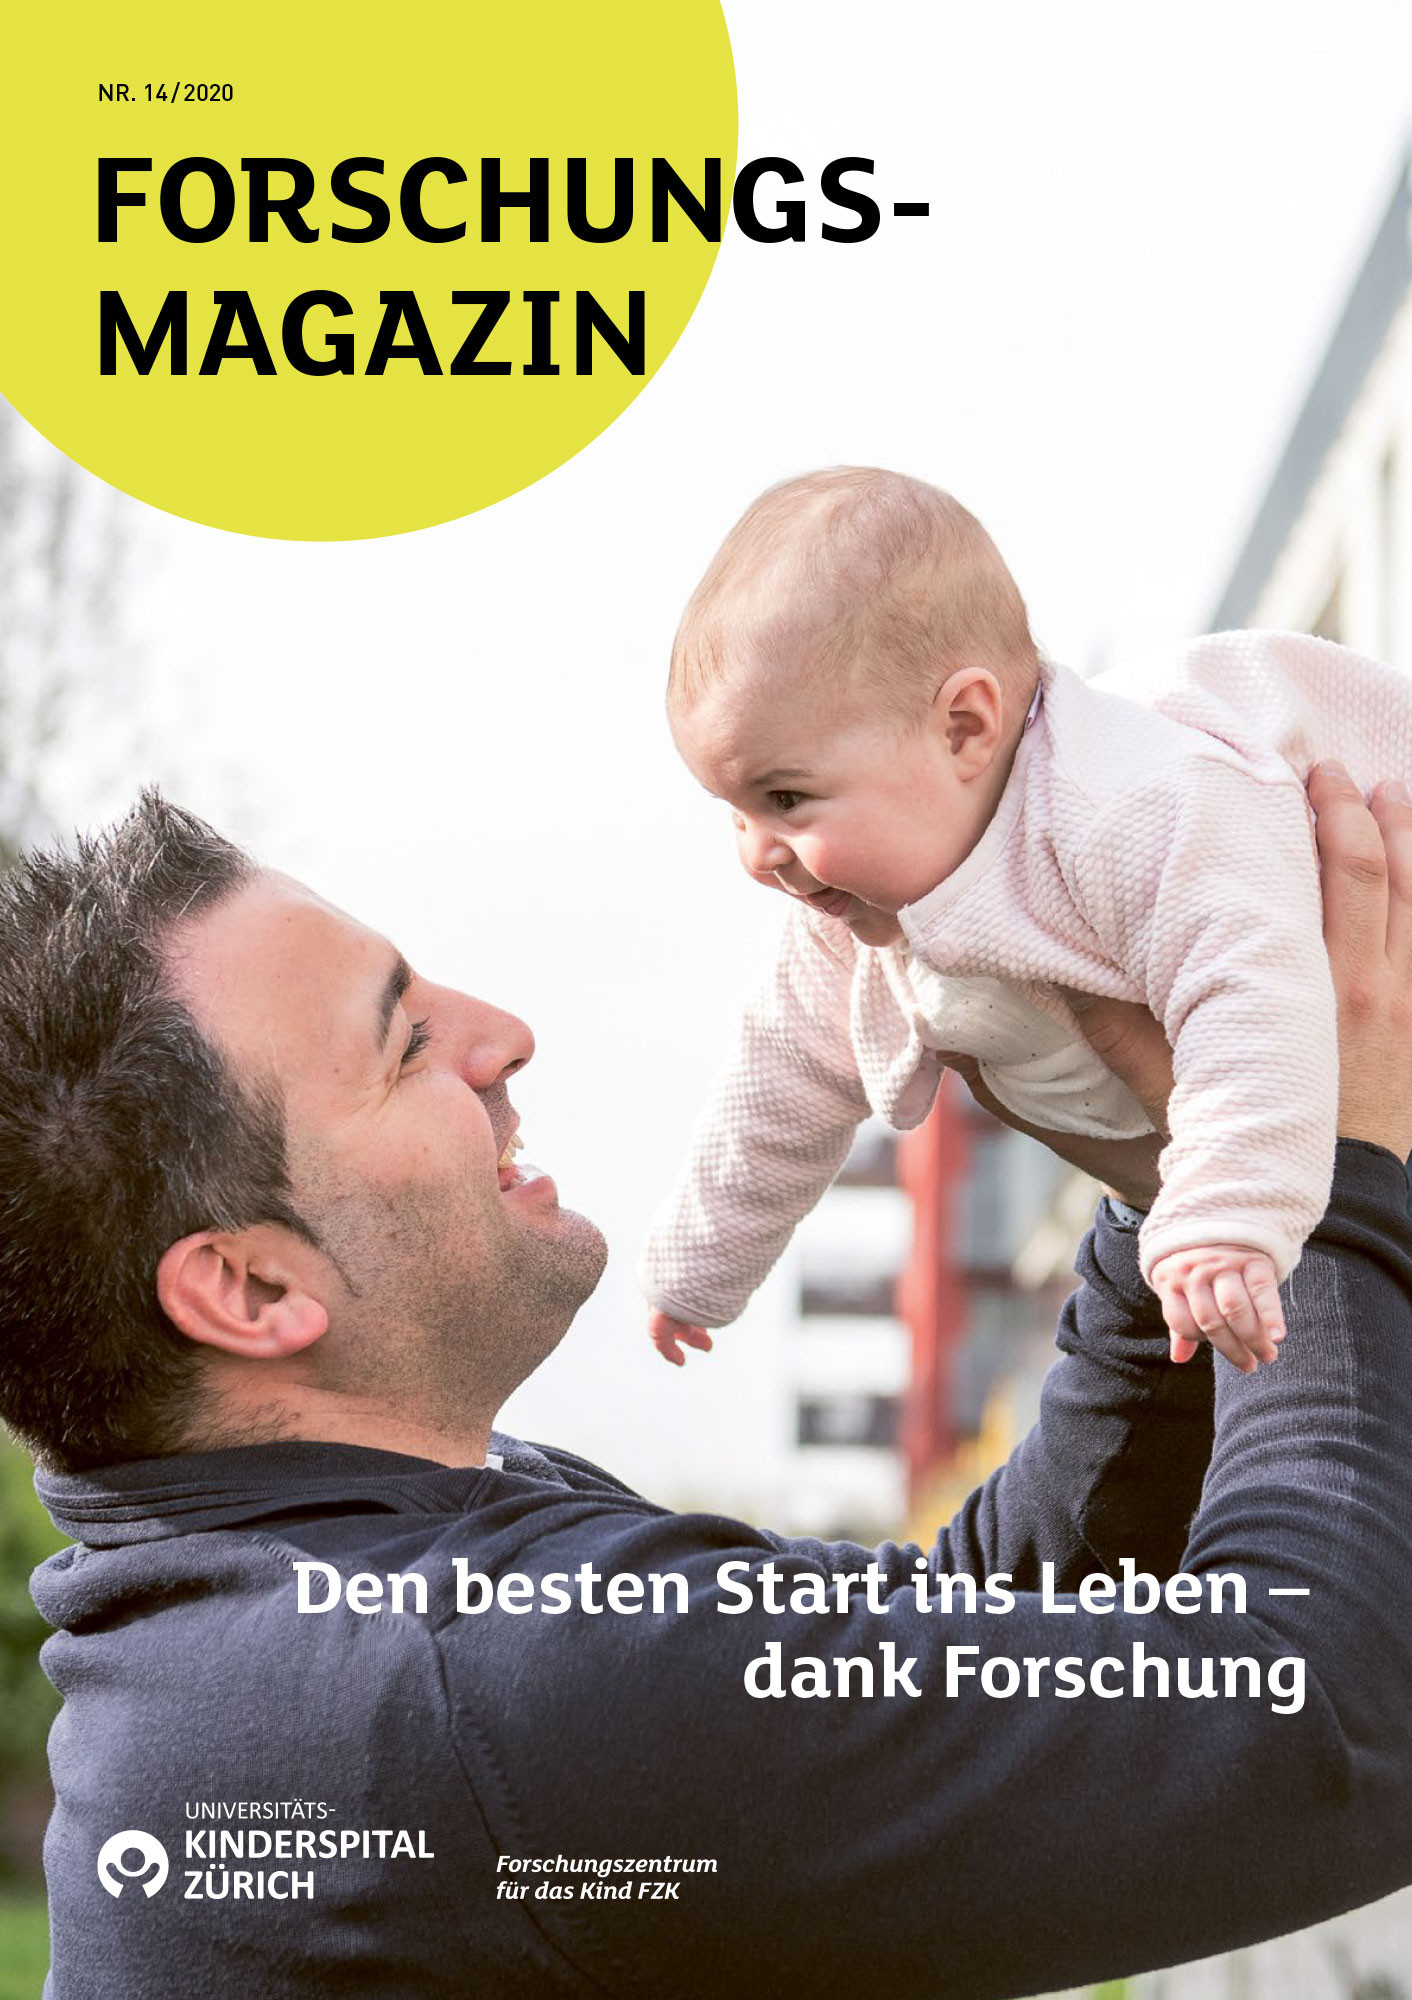 Forschugnsmagazin 2020: Den besten Start ins Leben - dank Forschung